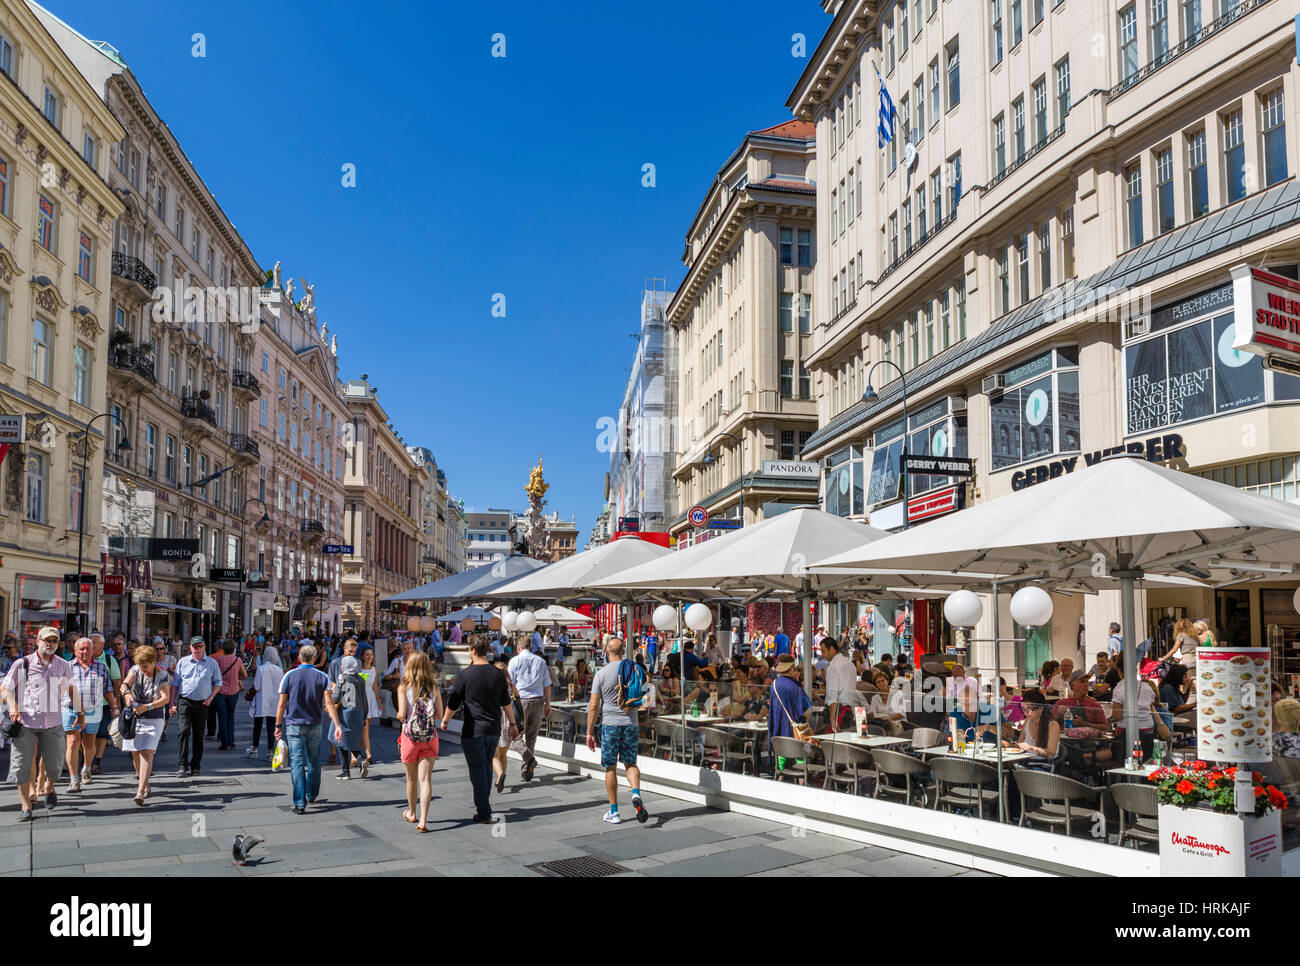 Wien, Graben. Geschäfte und Straßencafé am Graben, Innere Stadt, Wien, Österreich Stockfoto